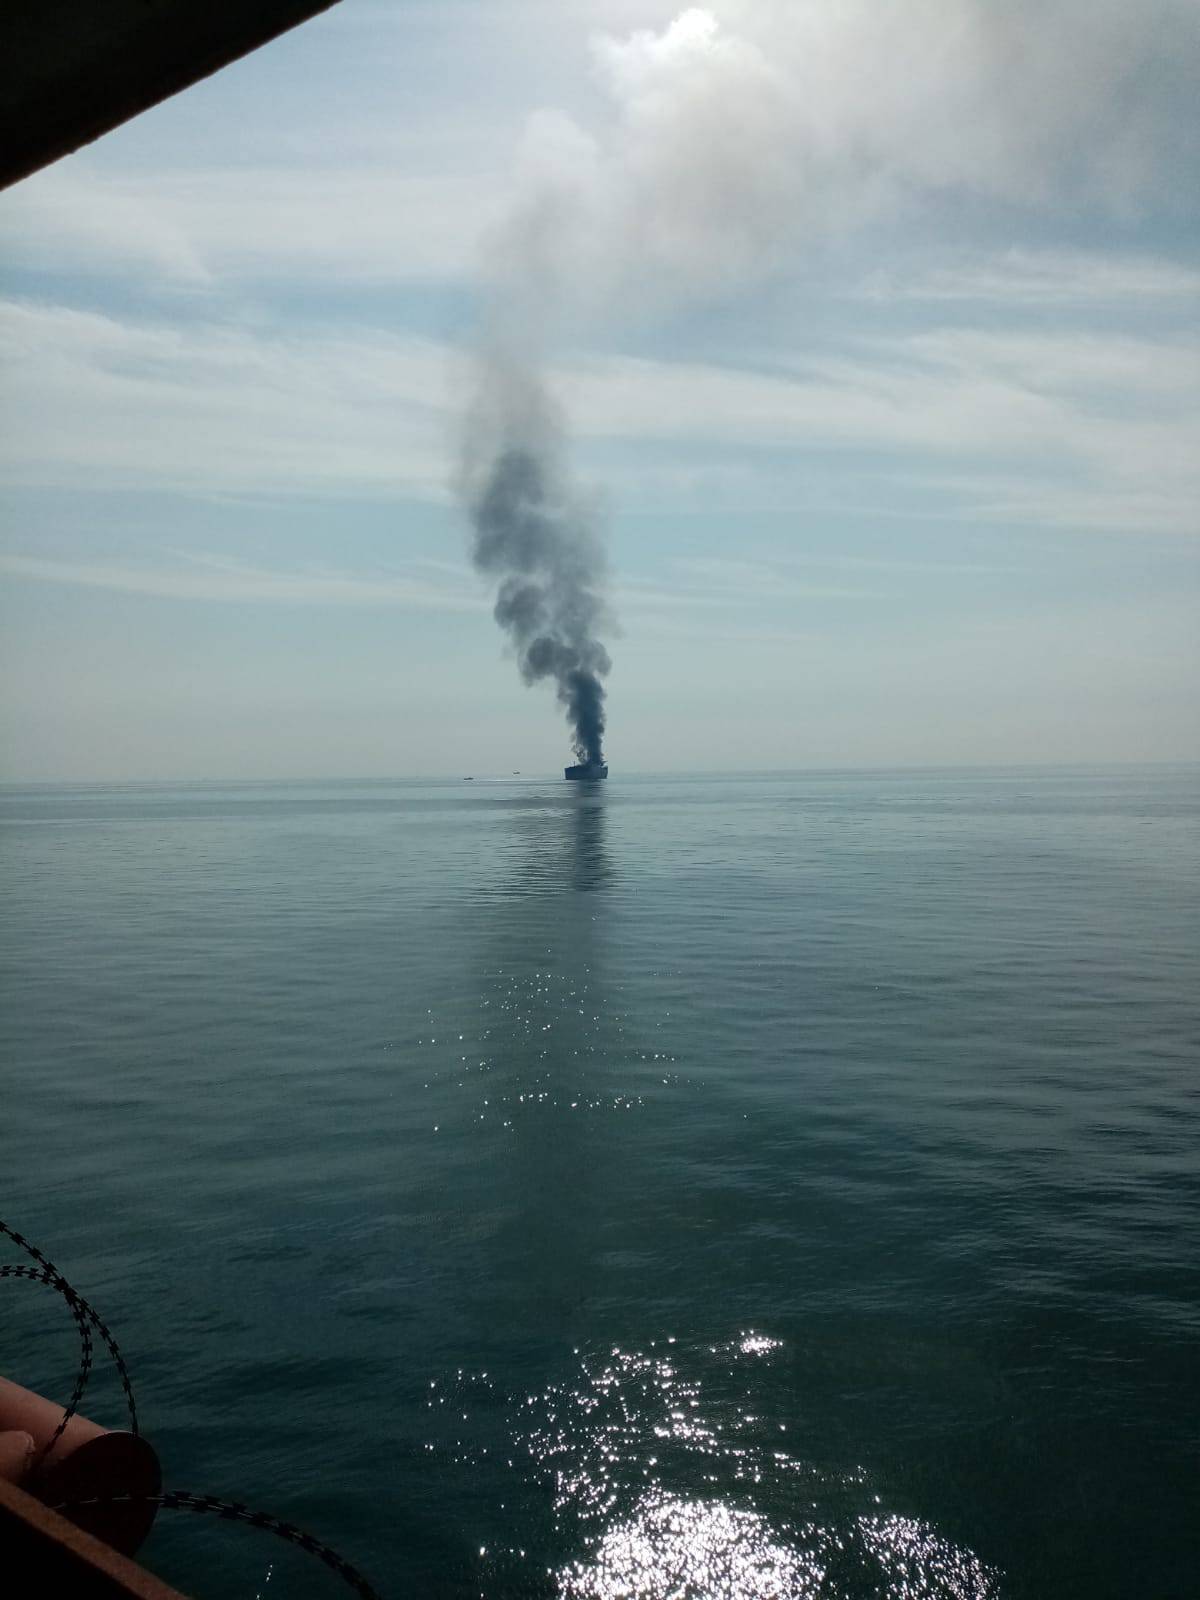 Čuli smo eksploziju i tanker je počeo gorjeti, evakuirali su nas